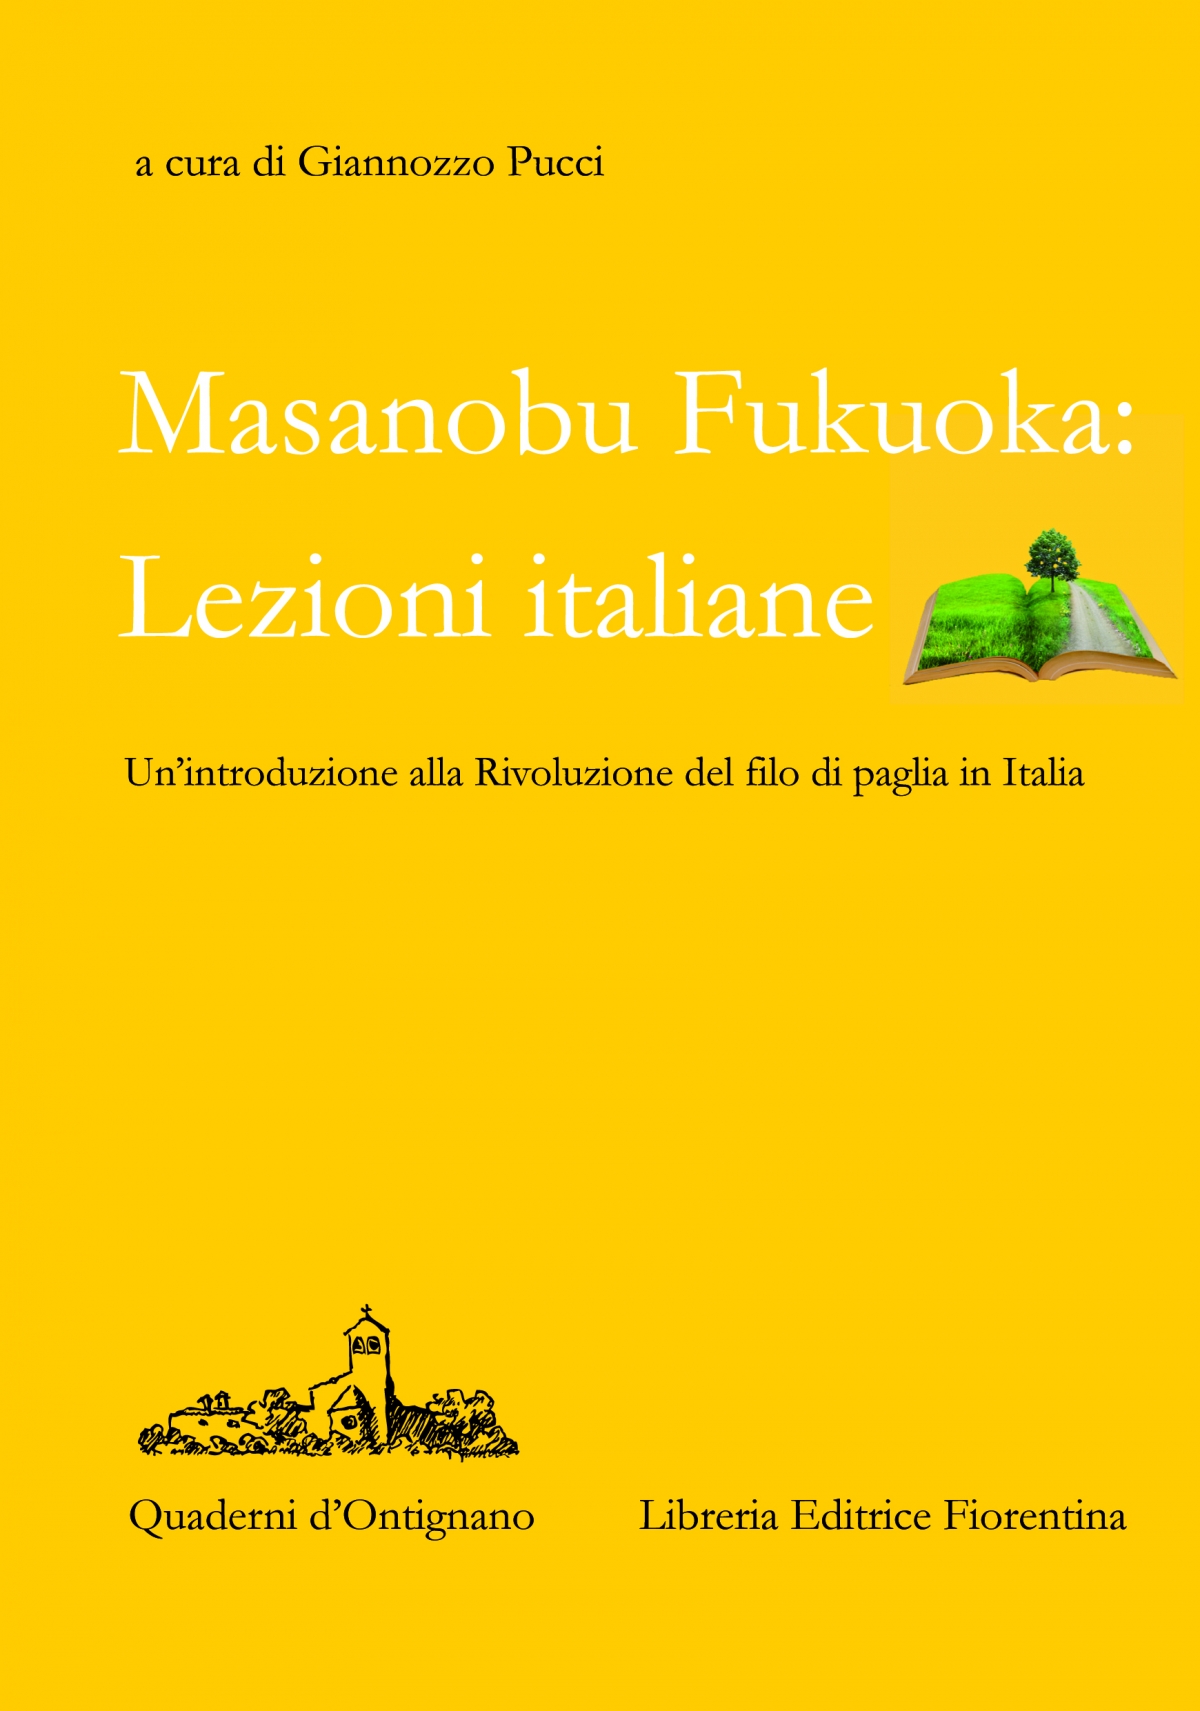 Masanobu Fukuoka: Lezioni italiane